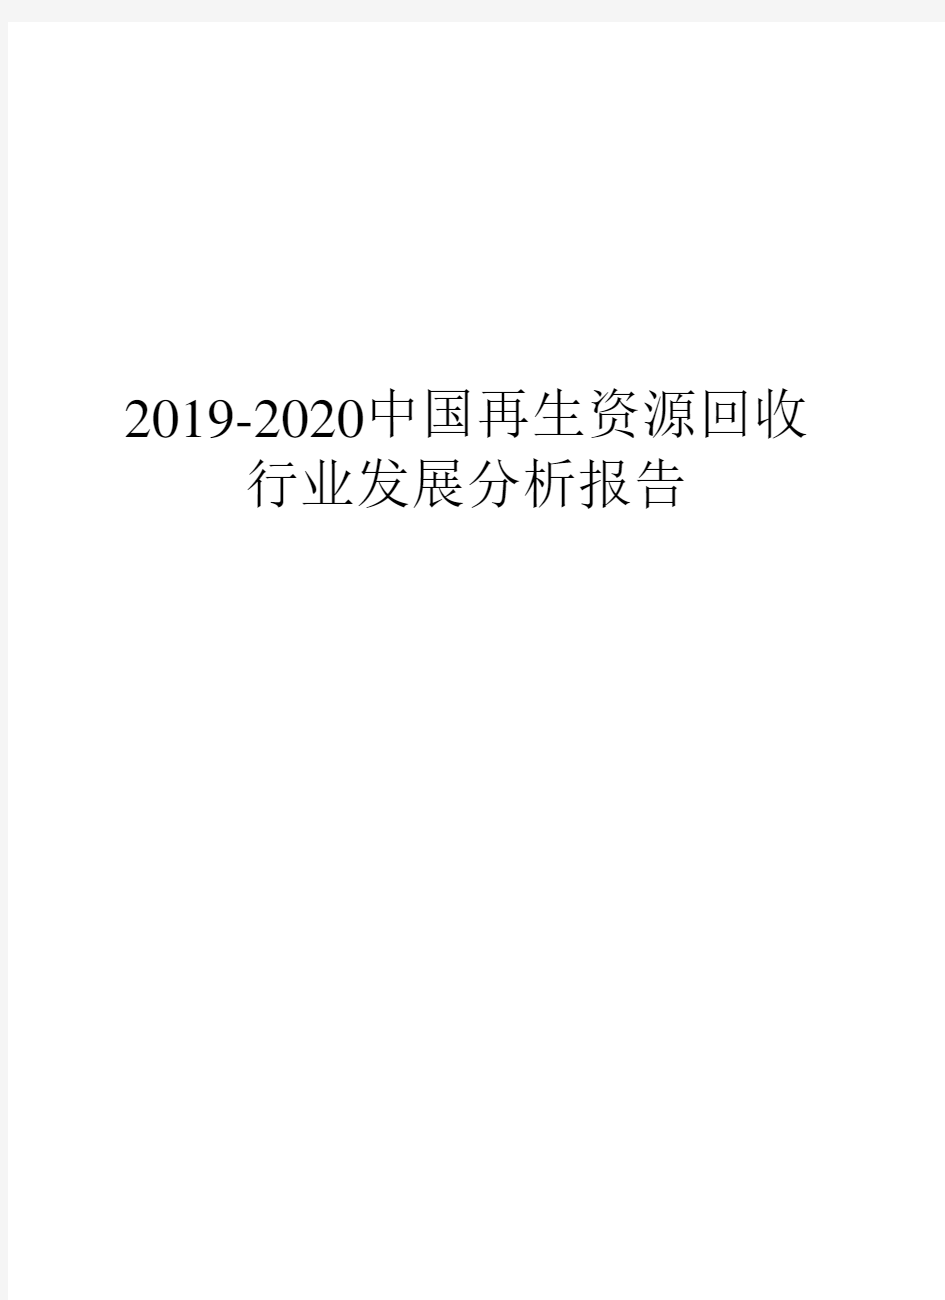 2019-2020中国再生资源回收行业发展分析报告